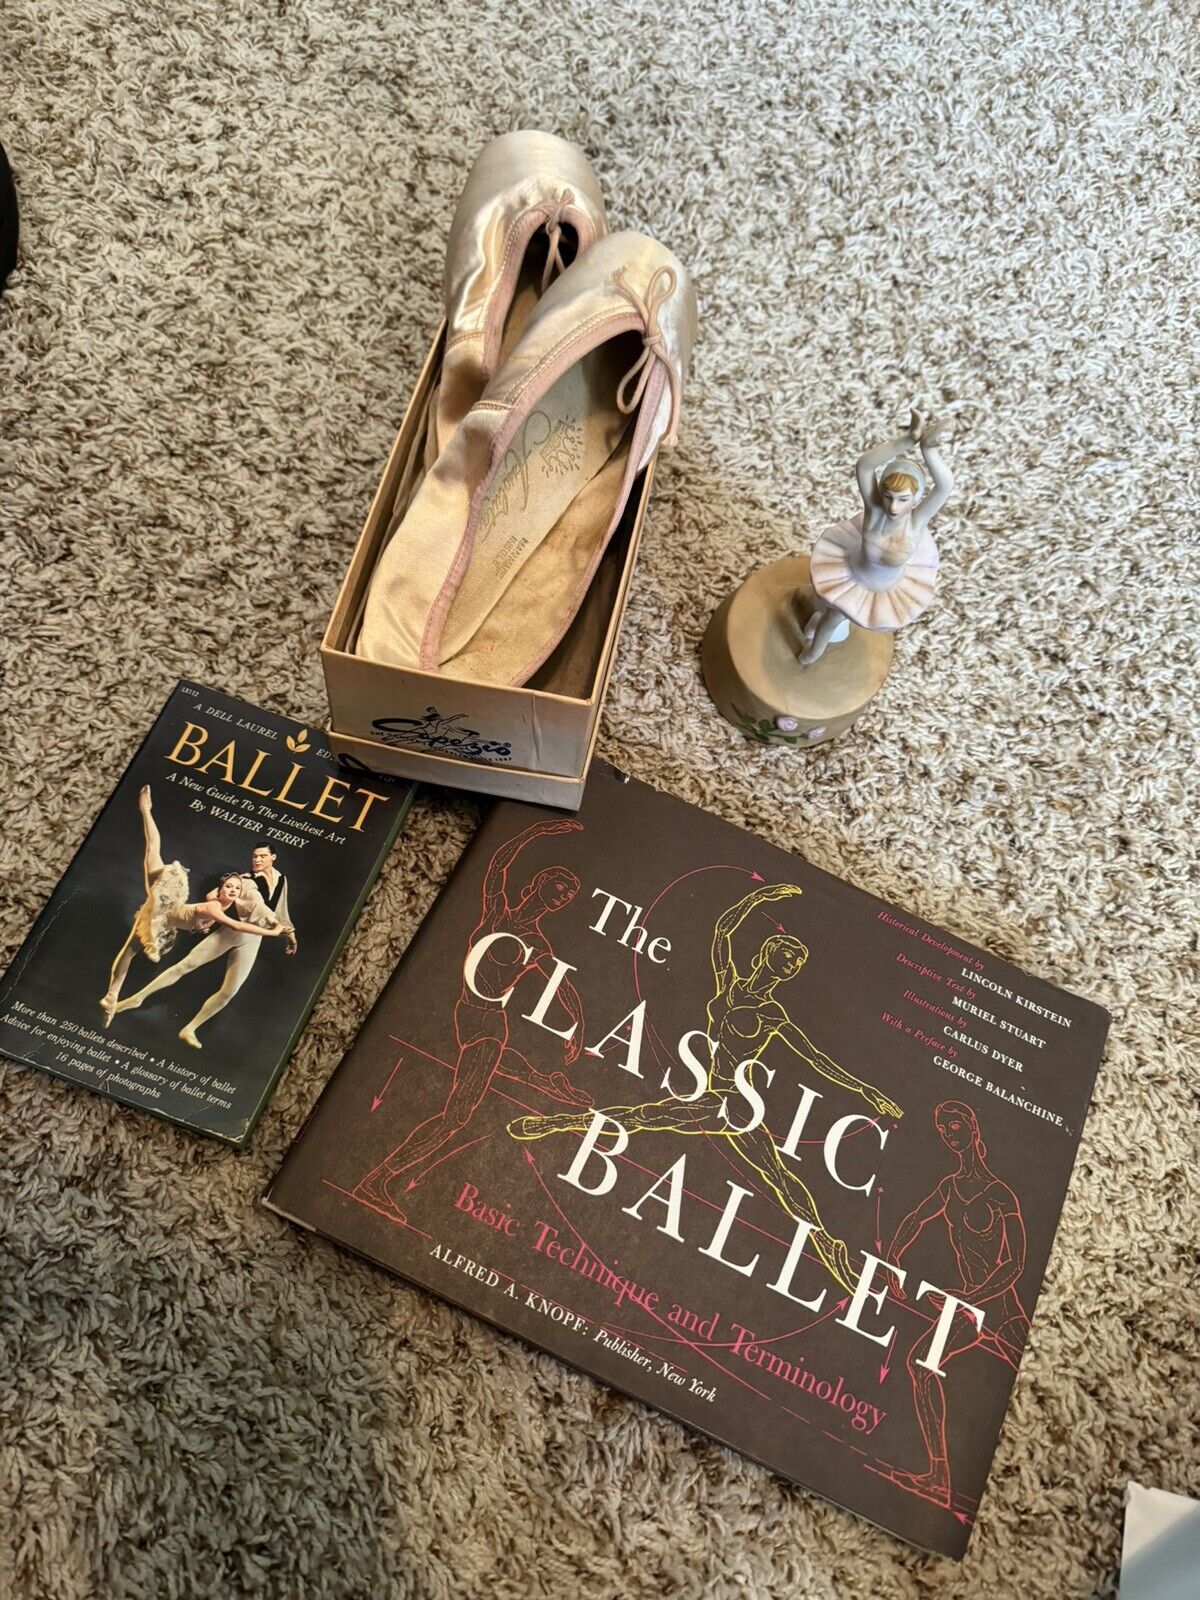 Vintage Capezio ballet slippers, two books, ballet music box, dances